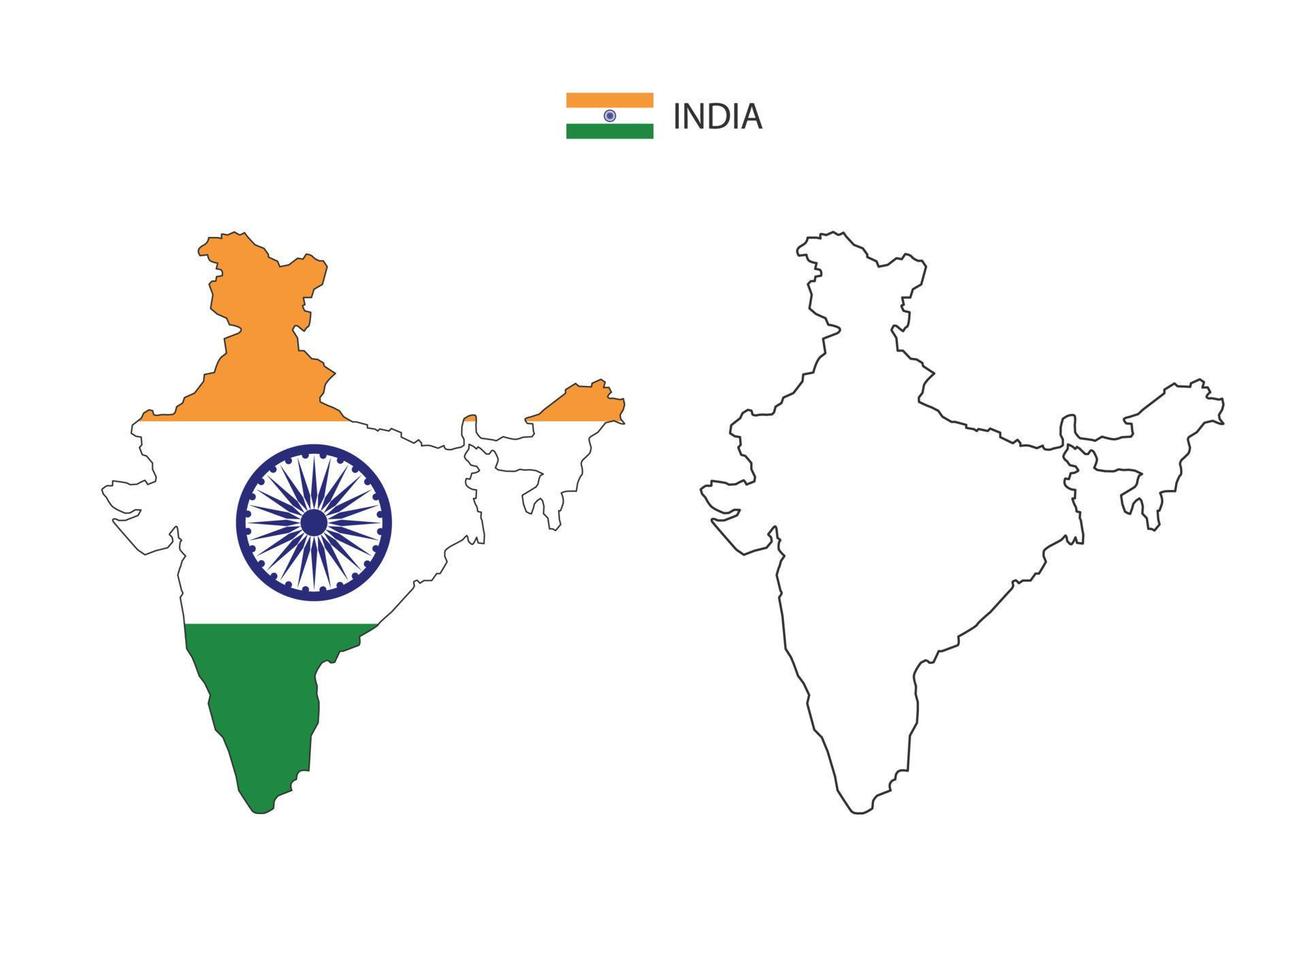 vetor da cidade do mapa da índia dividido pelo estilo de simplicidade do contorno. tem 2 versões, versão de linha fina preta e cor da versão da bandeira do país. ambos os mapas estavam no fundo branco.